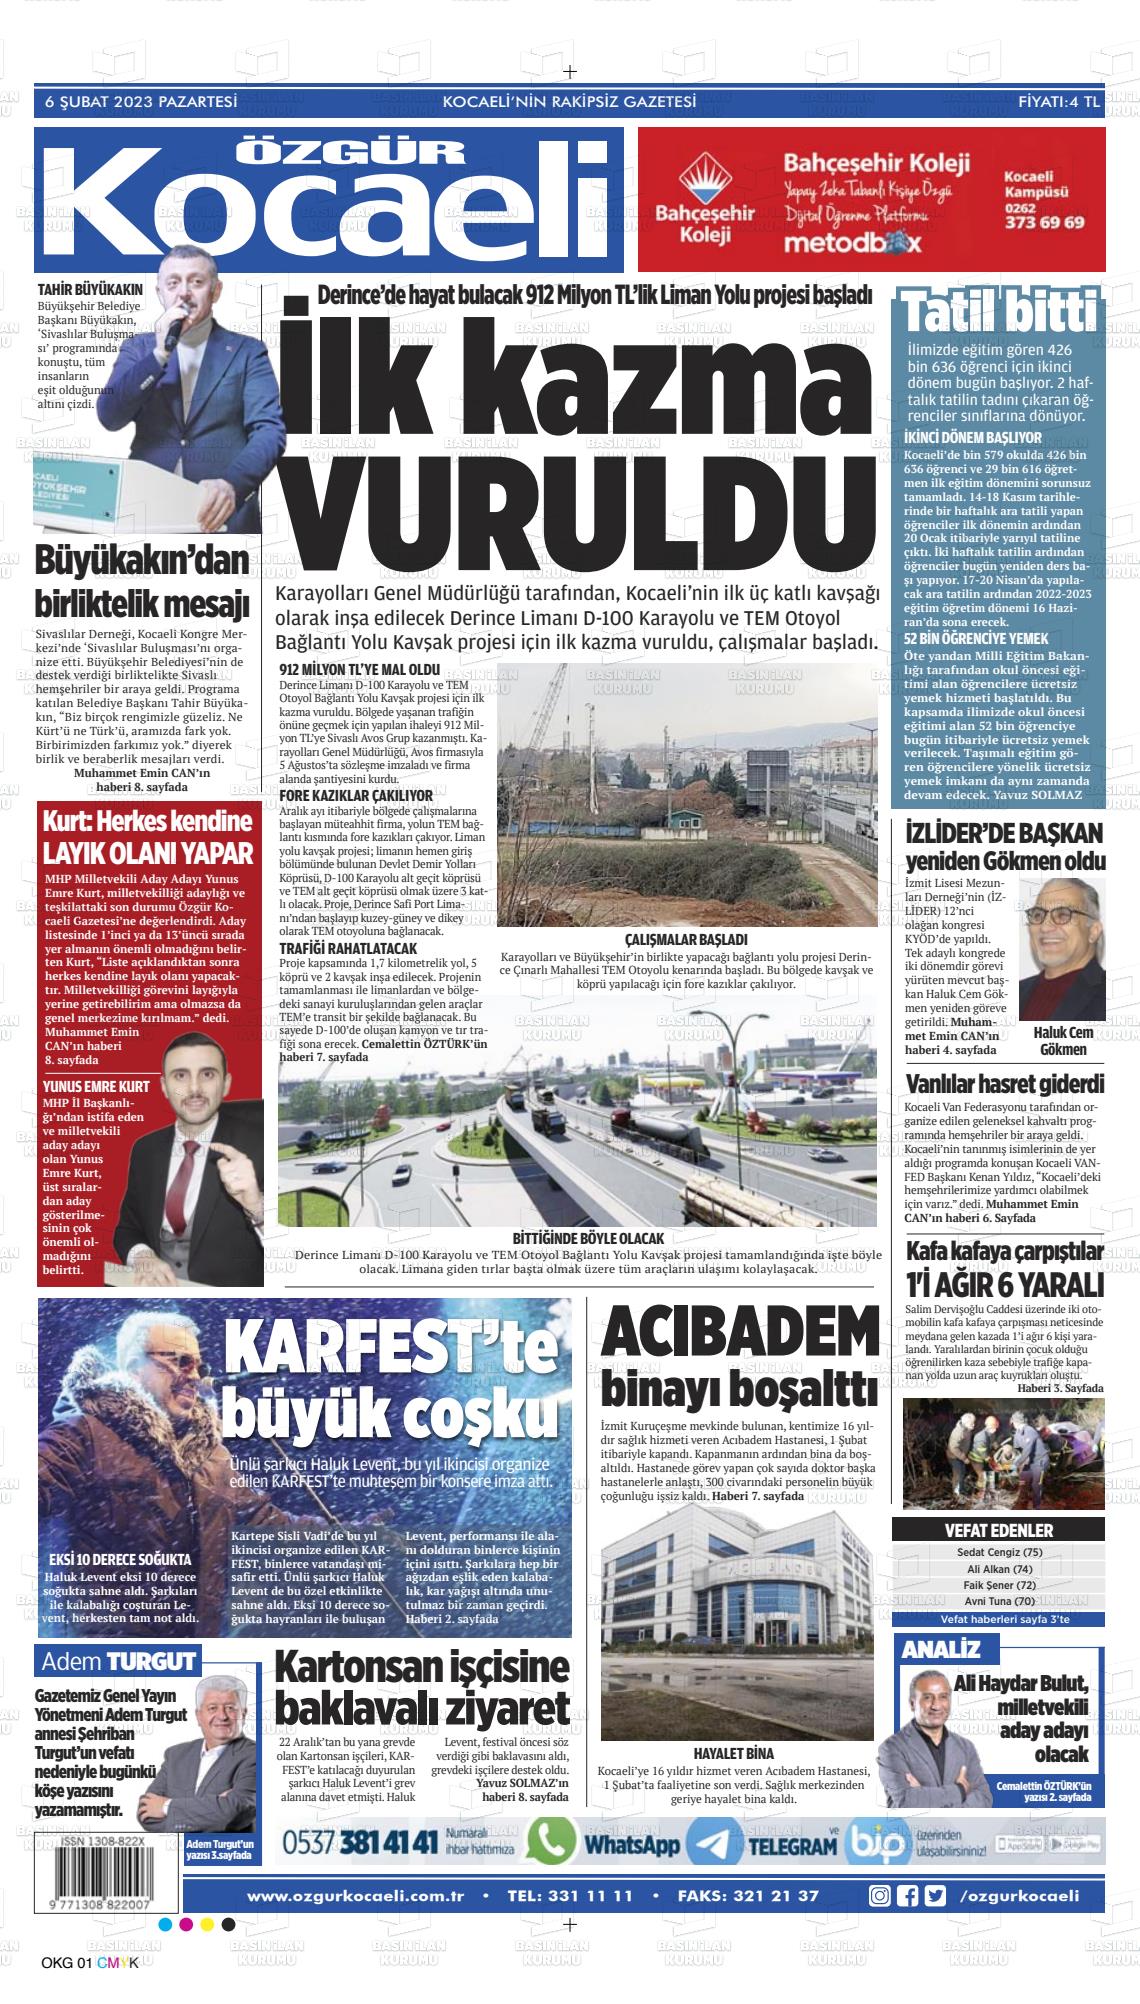 06 Şubat 2023 Özgür Kocaeli Gazete Manşeti